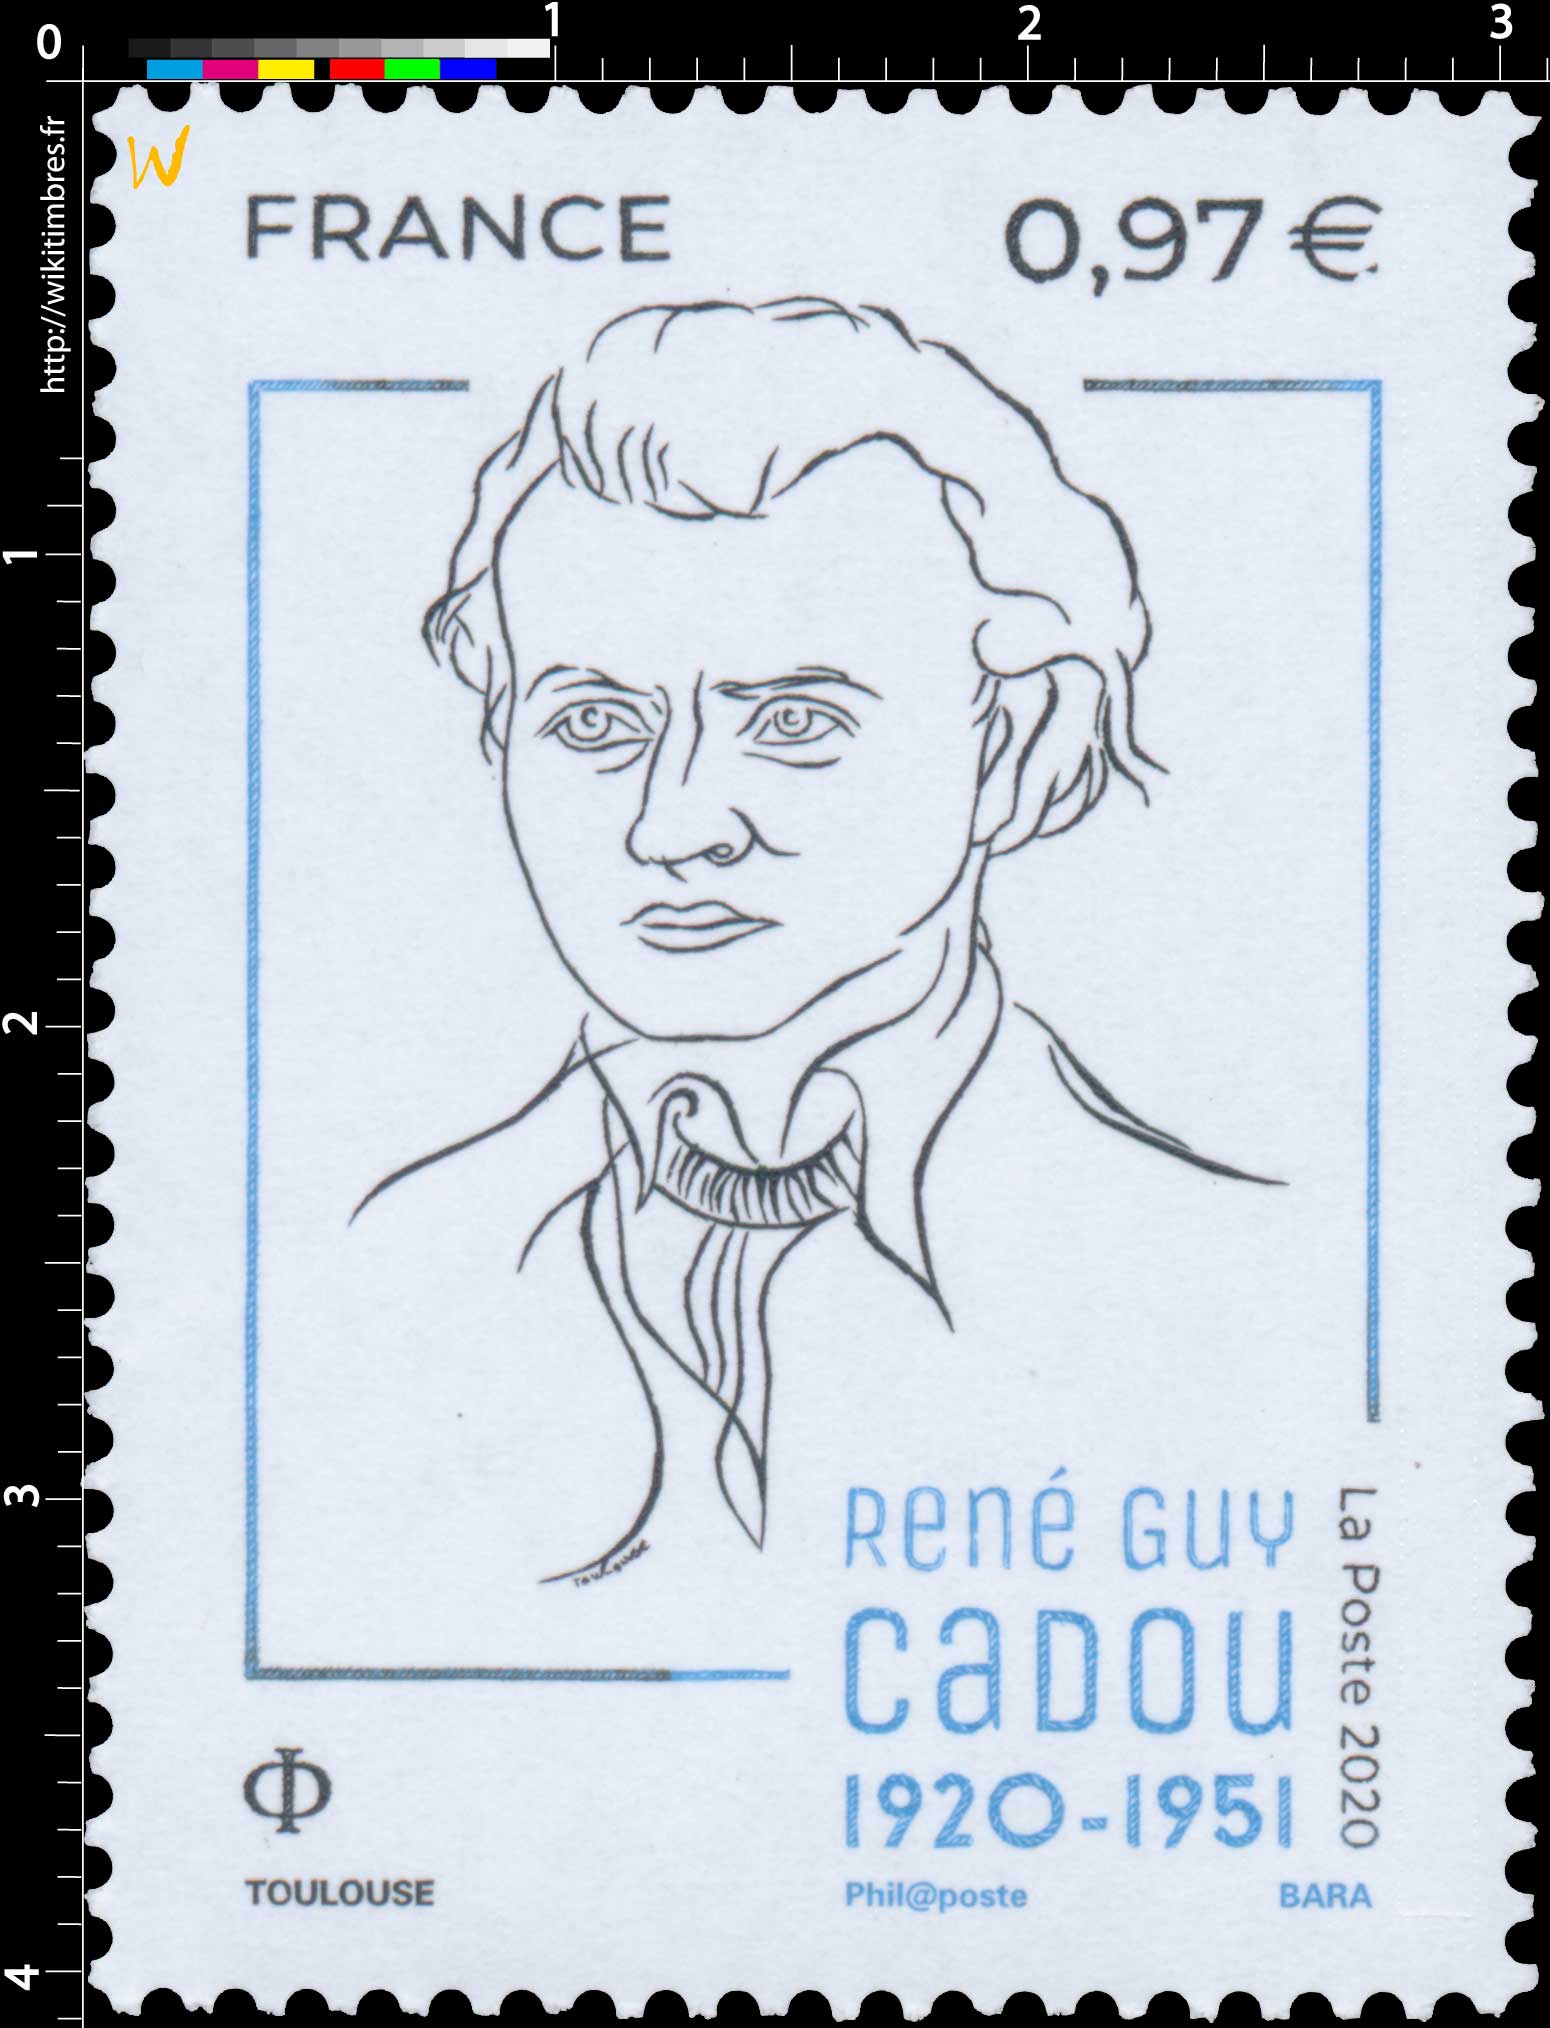 2020 René Guy CADOU 1920 - 1951